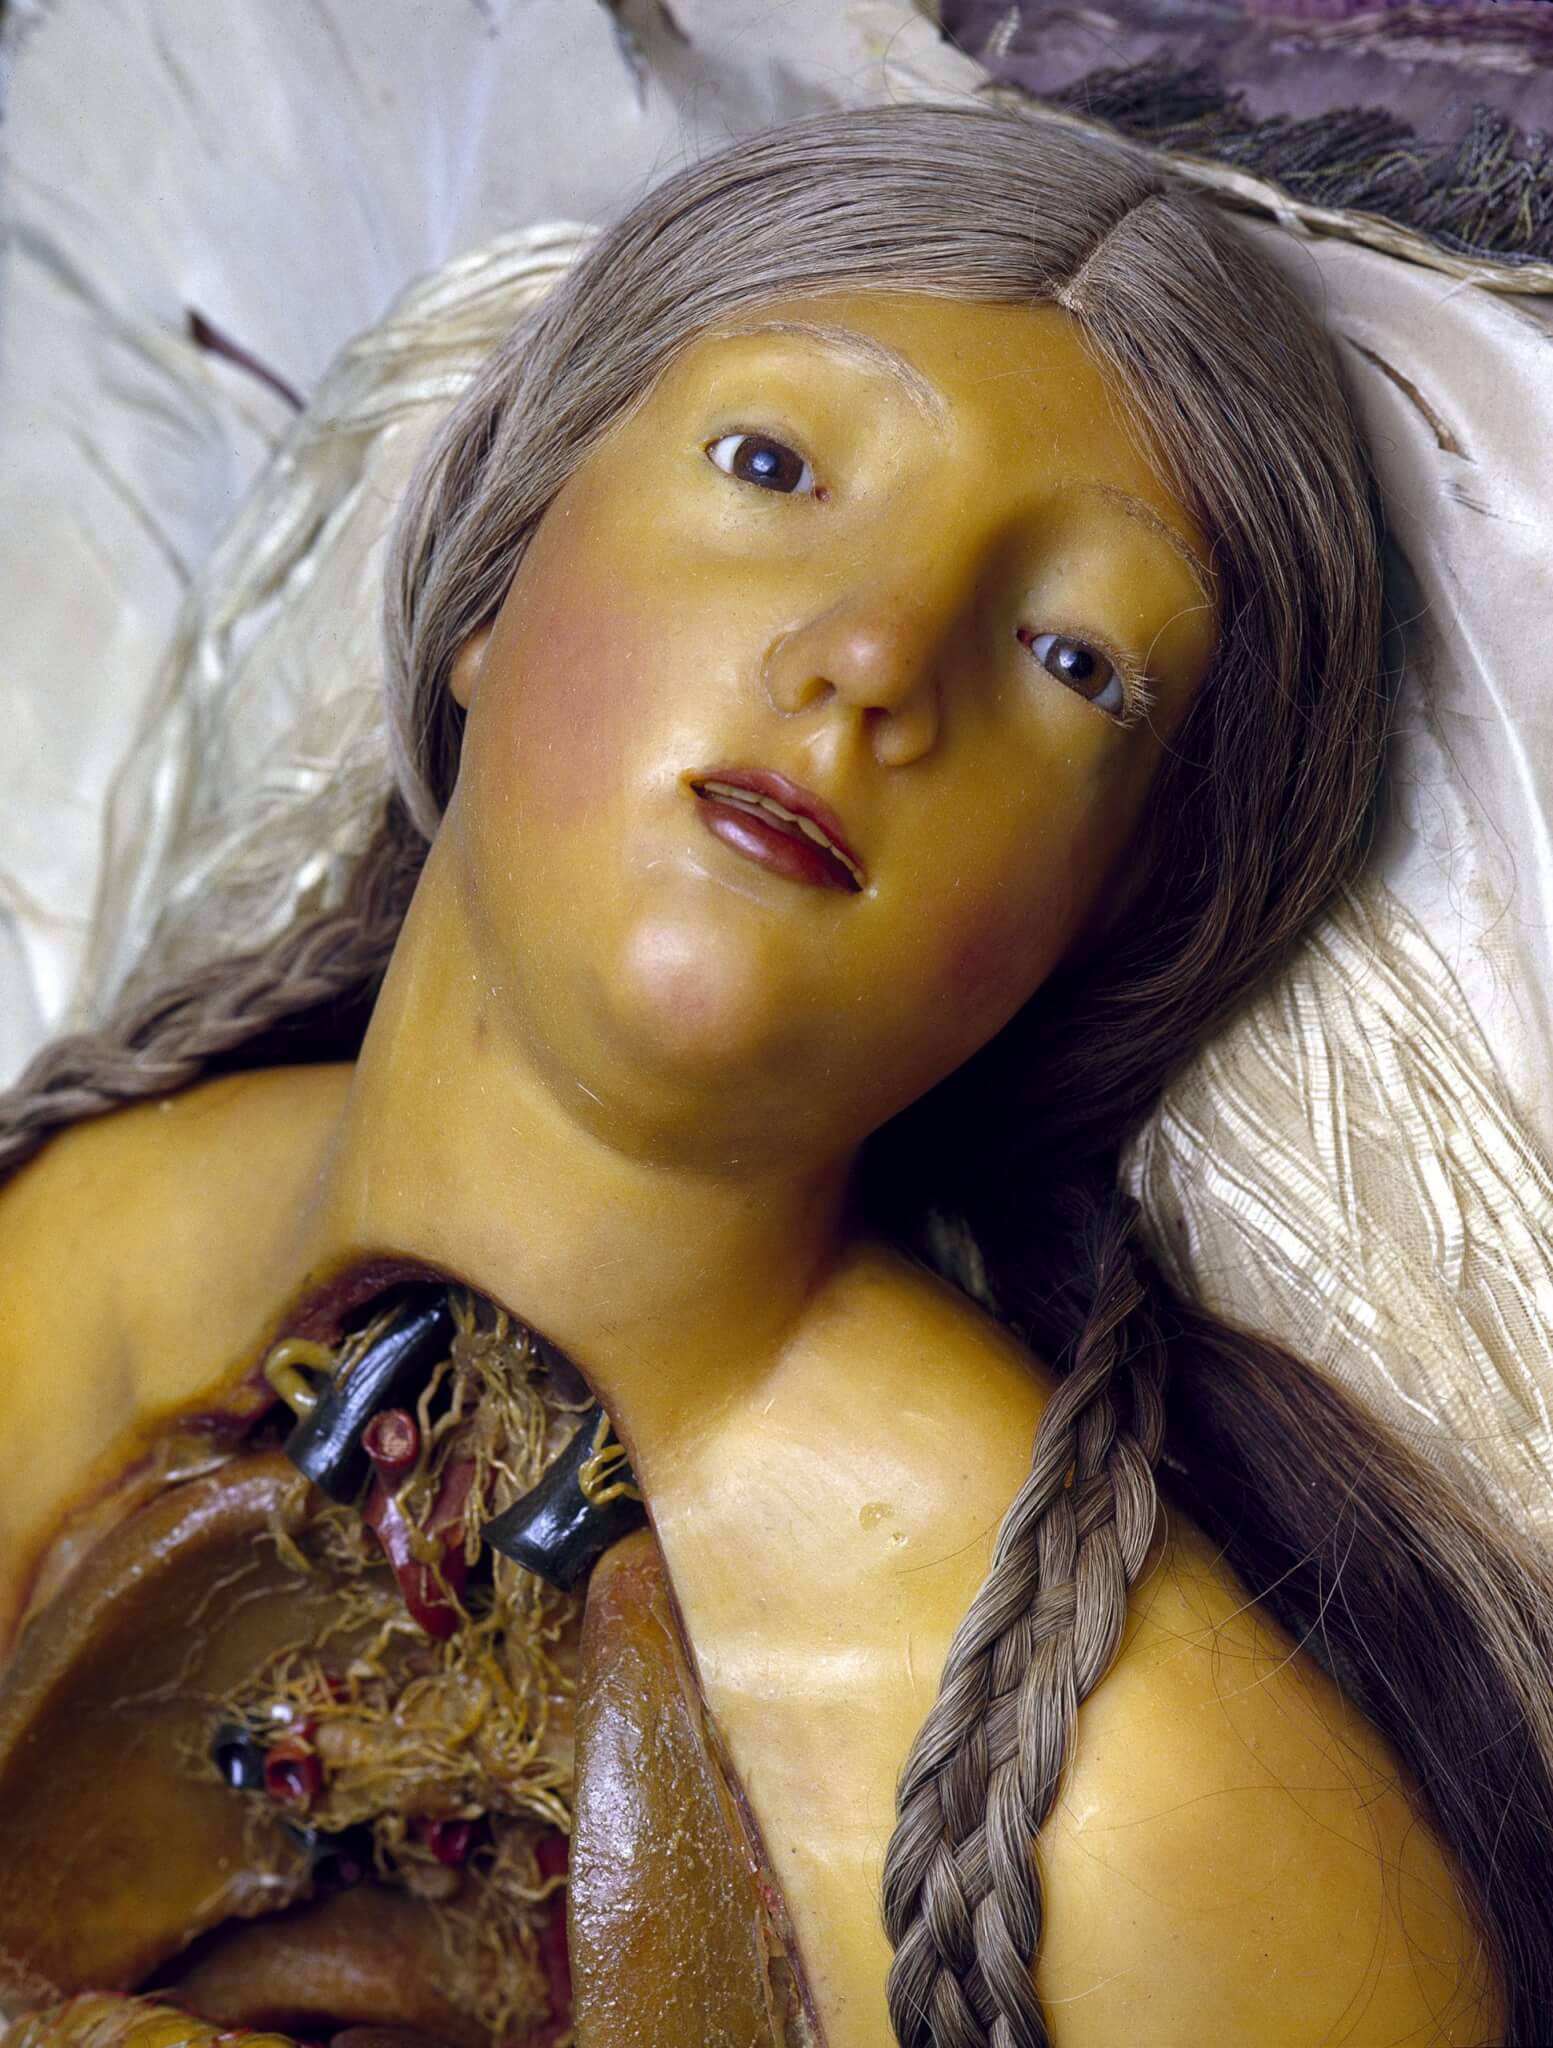 Cere anatomiche - La Specola di Firenze - David Cronenberg